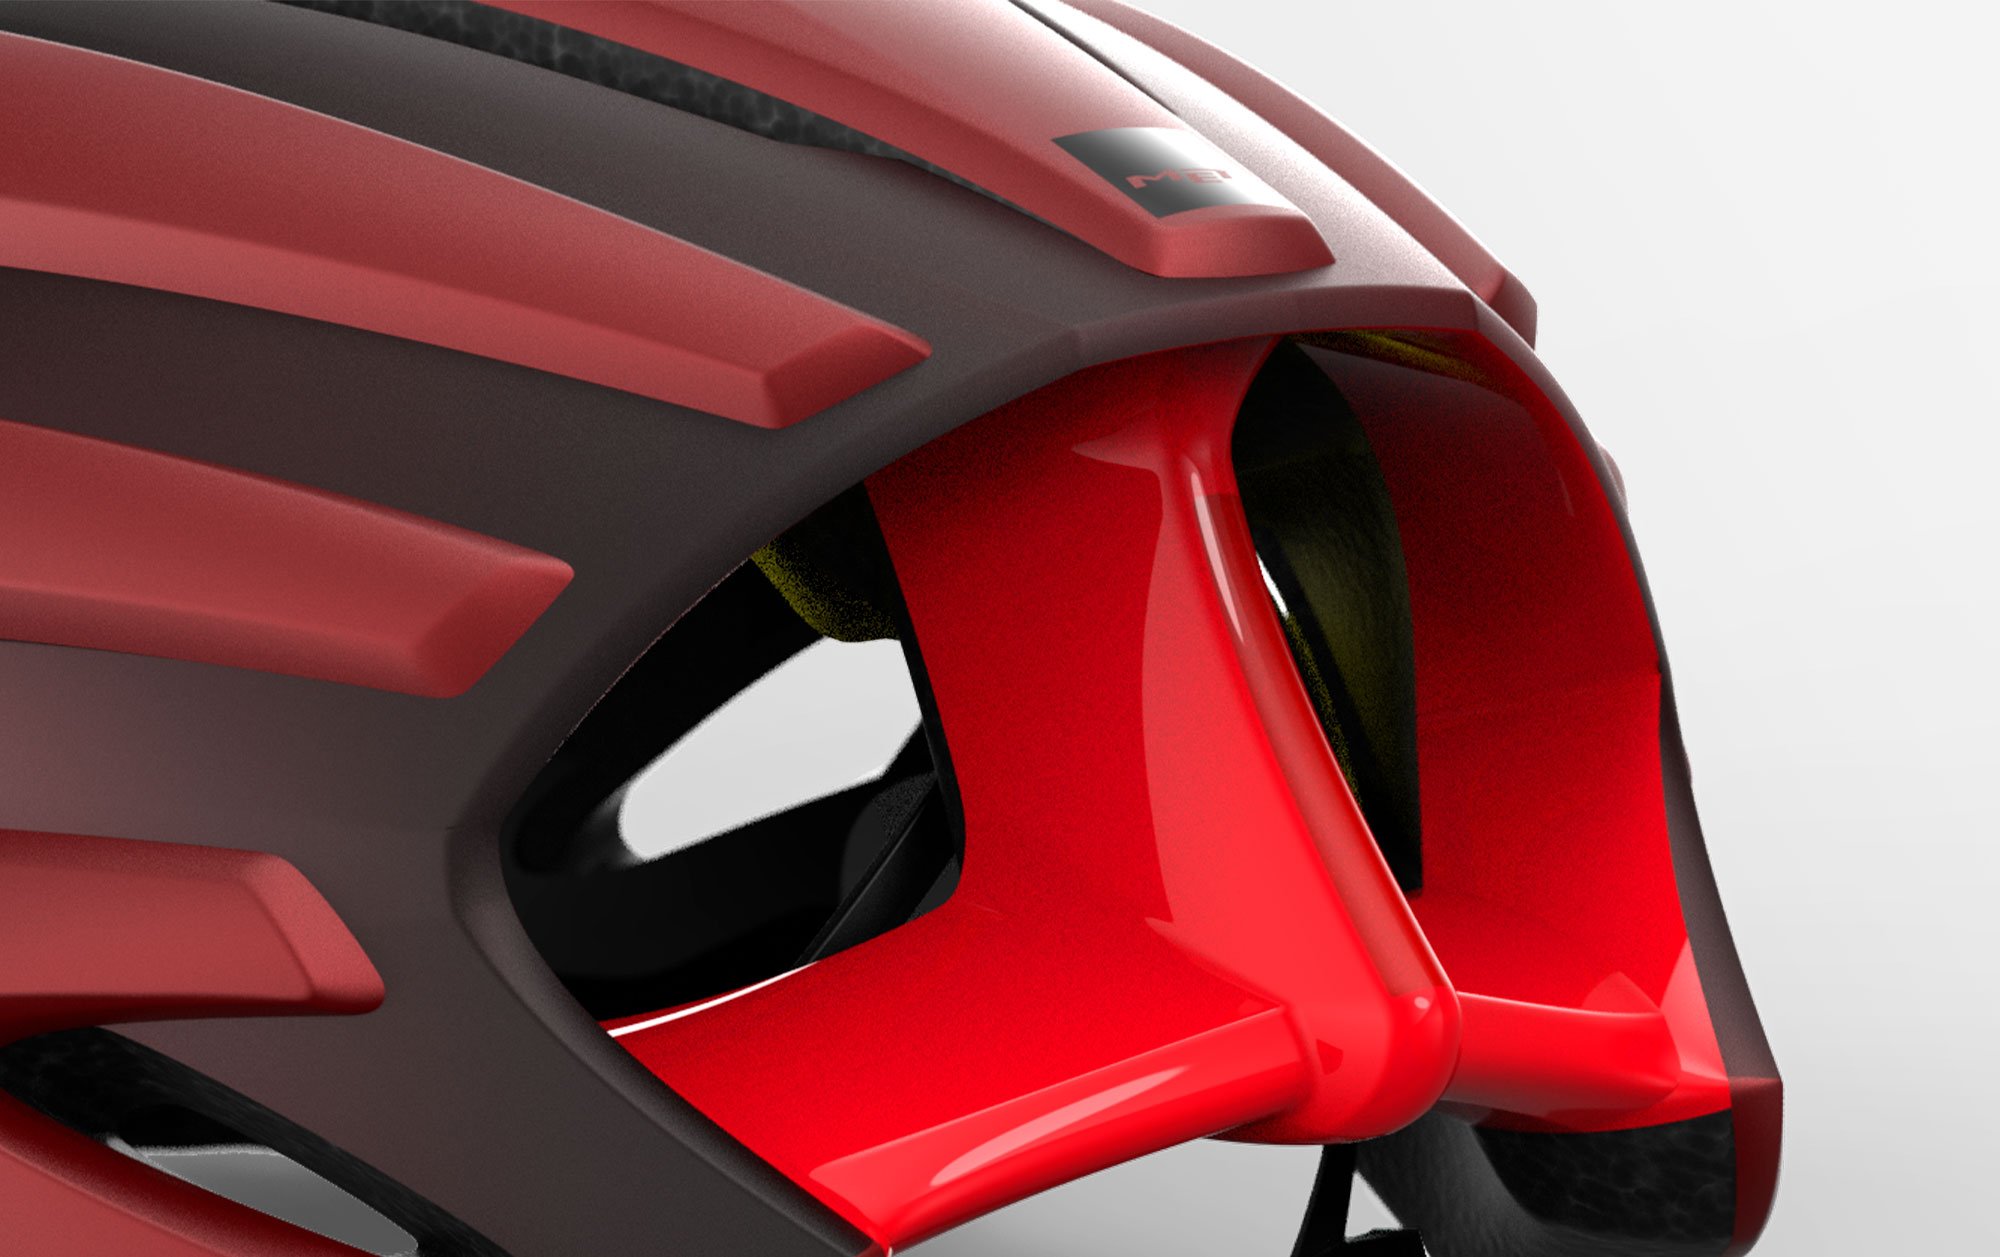 MET Trenta Mips is a Road, Aero, Cyclocross and Gravel Helmet